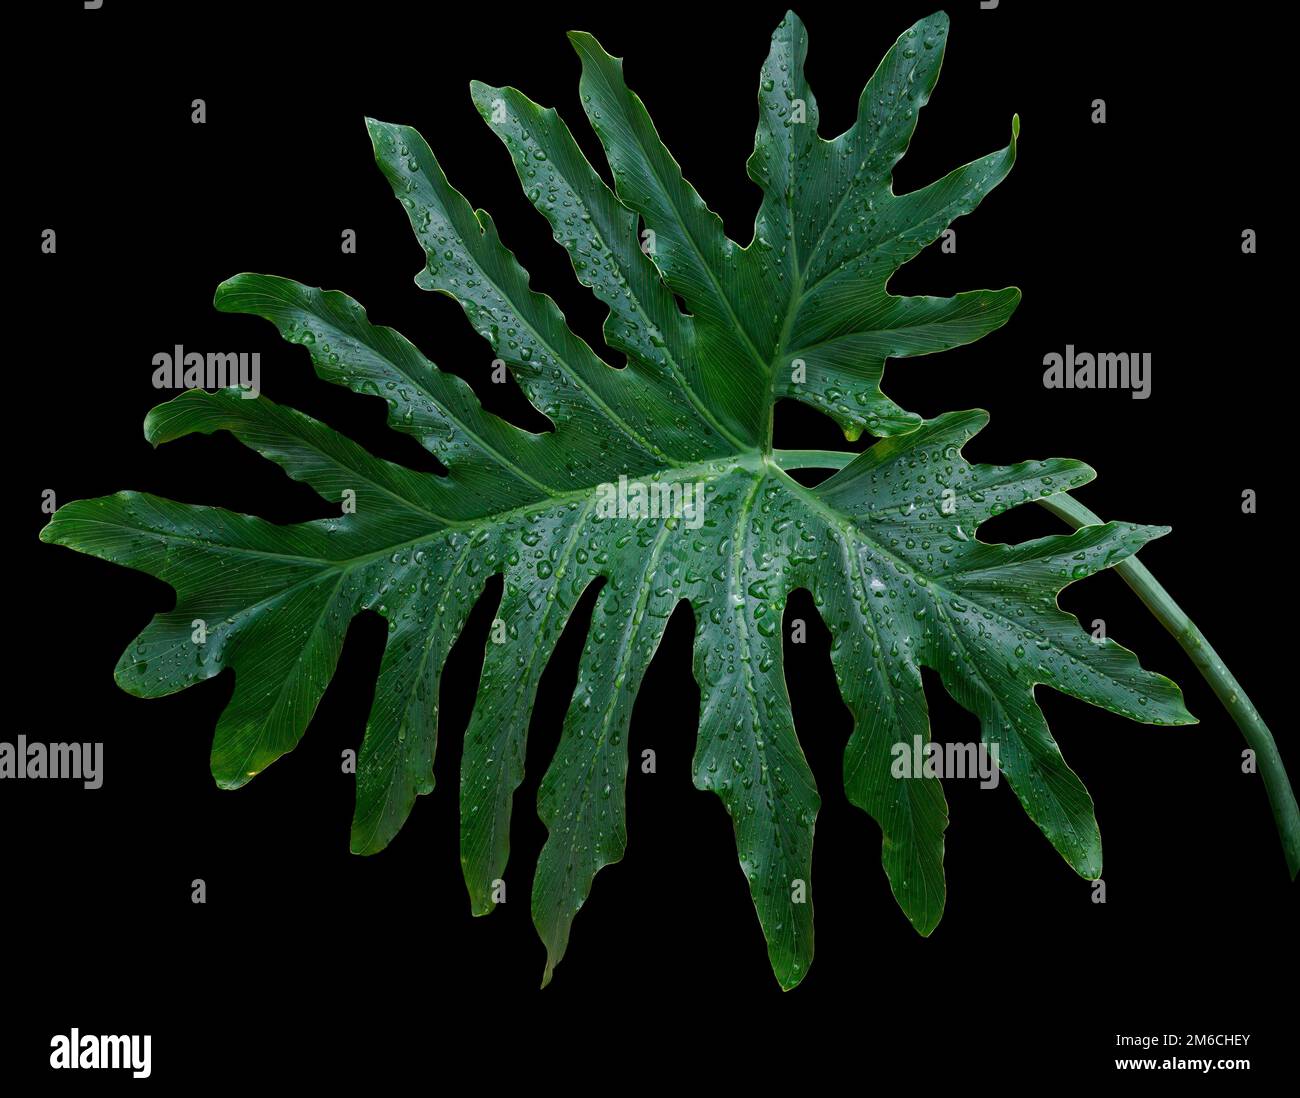 grandi foglie verdi tropicali di filodendro su sfondo nero Foto Stock